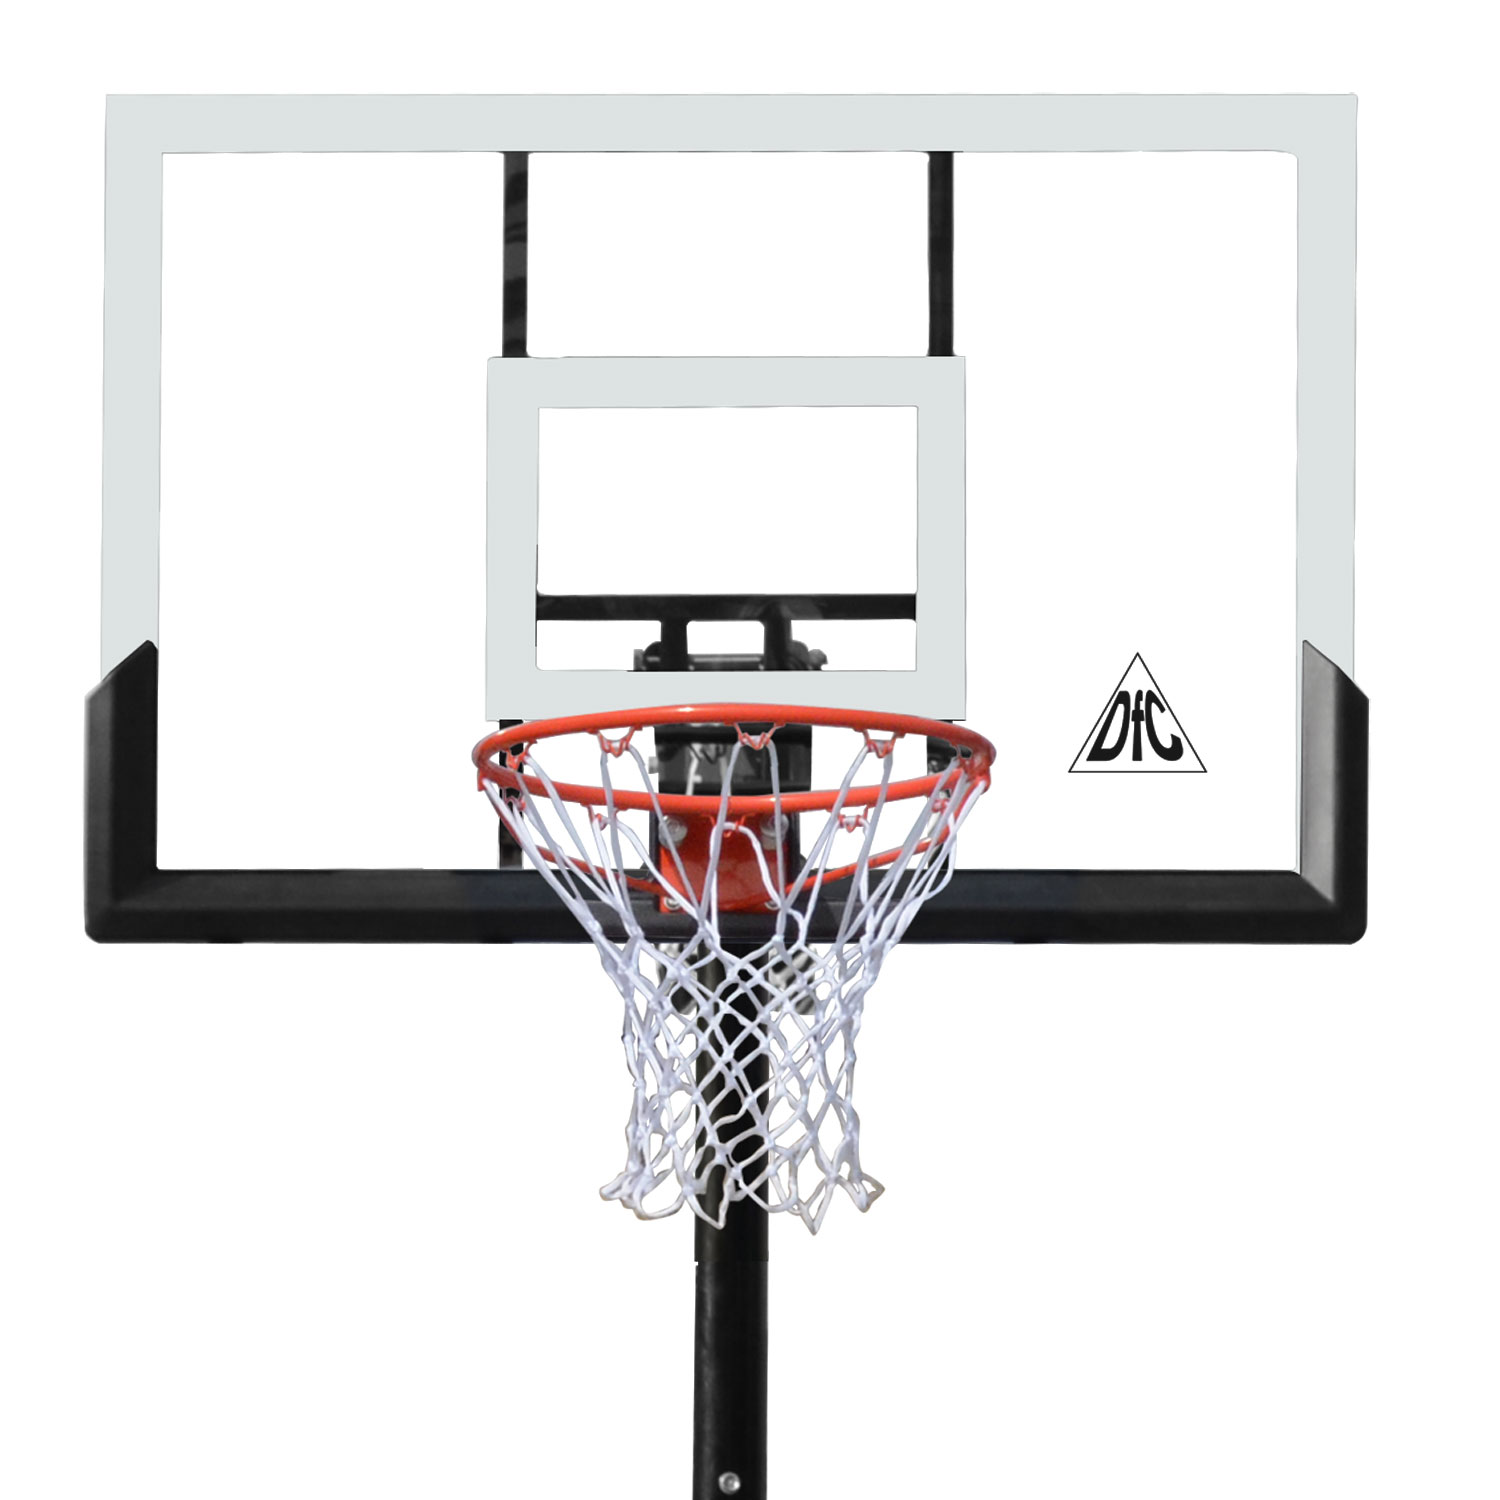 Баскетбольная мобильная стойка DFC STAND48P 120x80cm поликарбонат